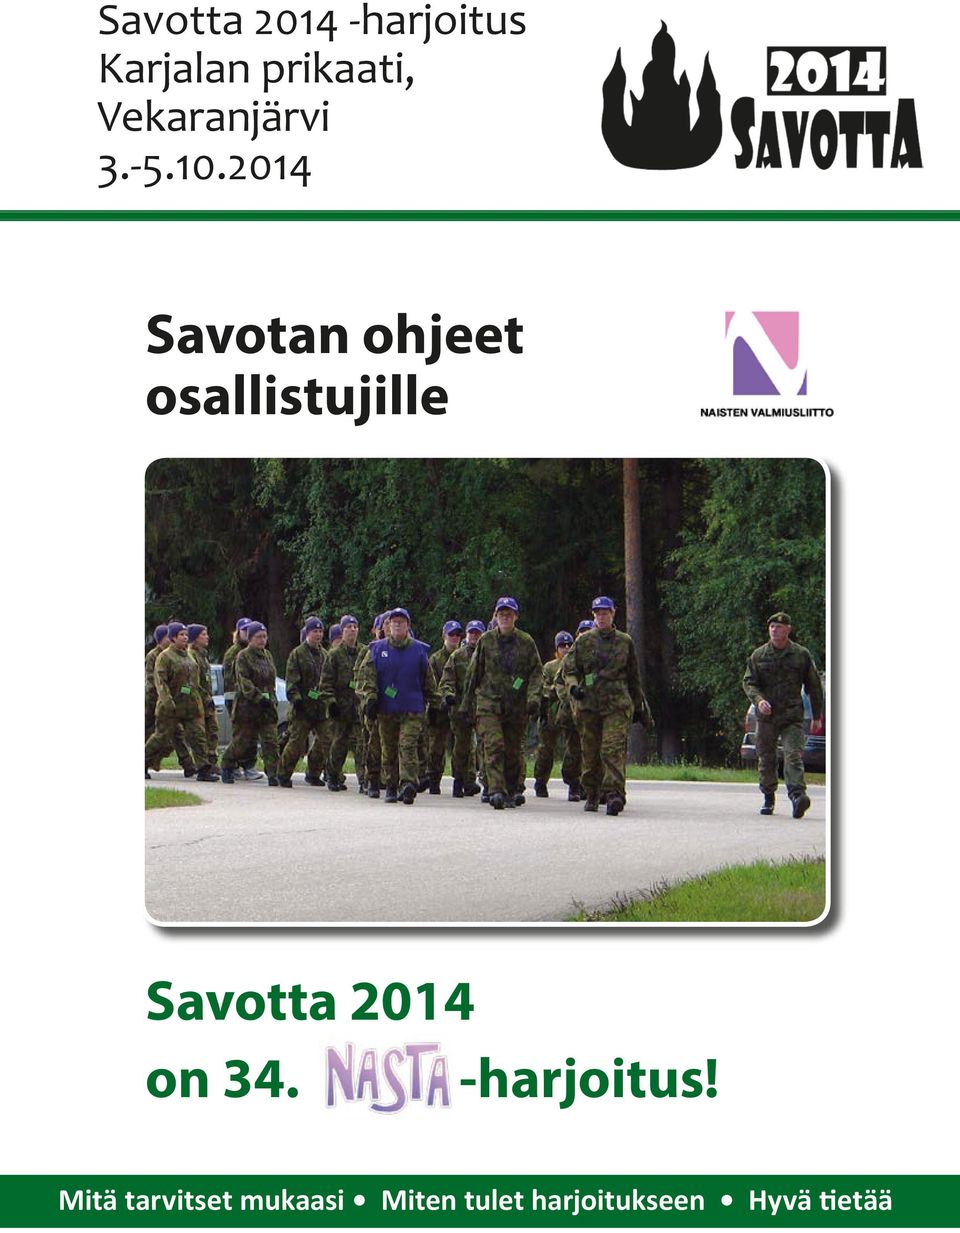 2014 Savotan ohjeet osallistujille Savotta 2014